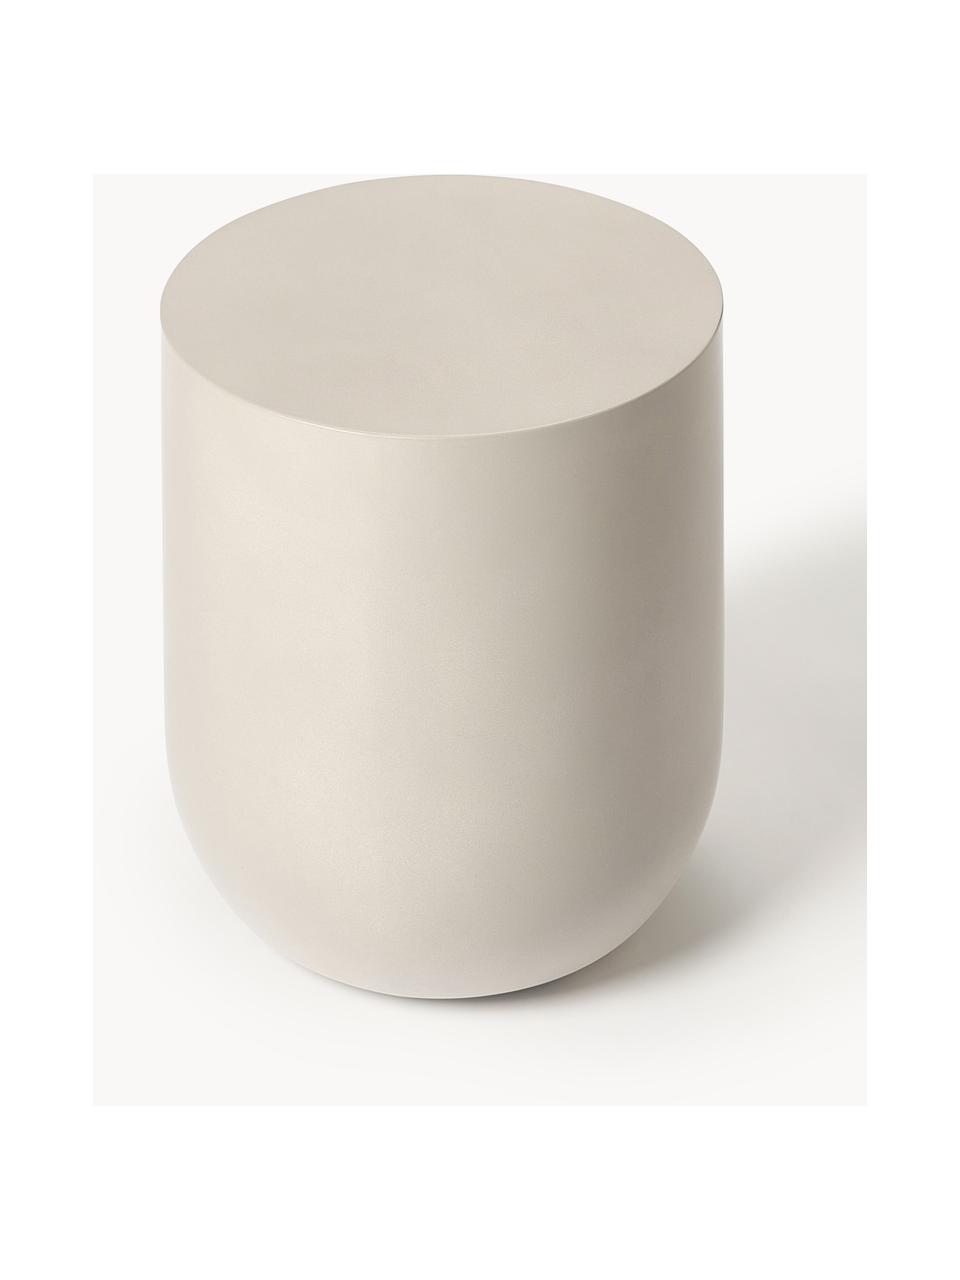 Tavolino rotondo da interno-esterno Rona, Cemento con fibra di vetro, Beige chiaro, Ø 40 cm